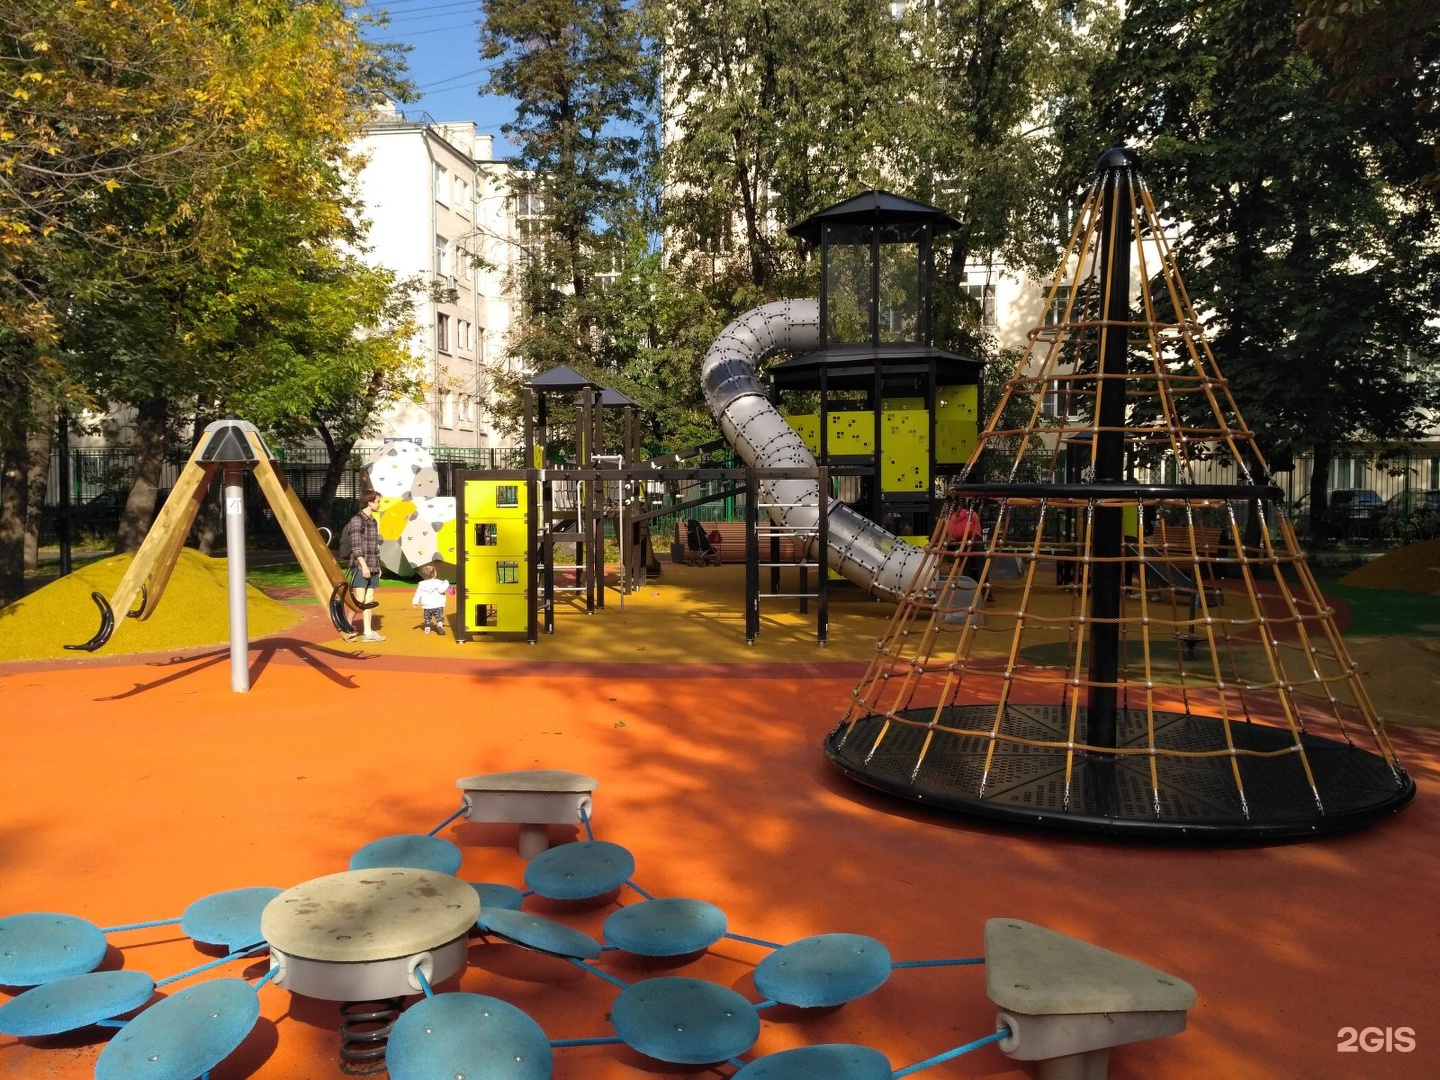 детские площадки в москве